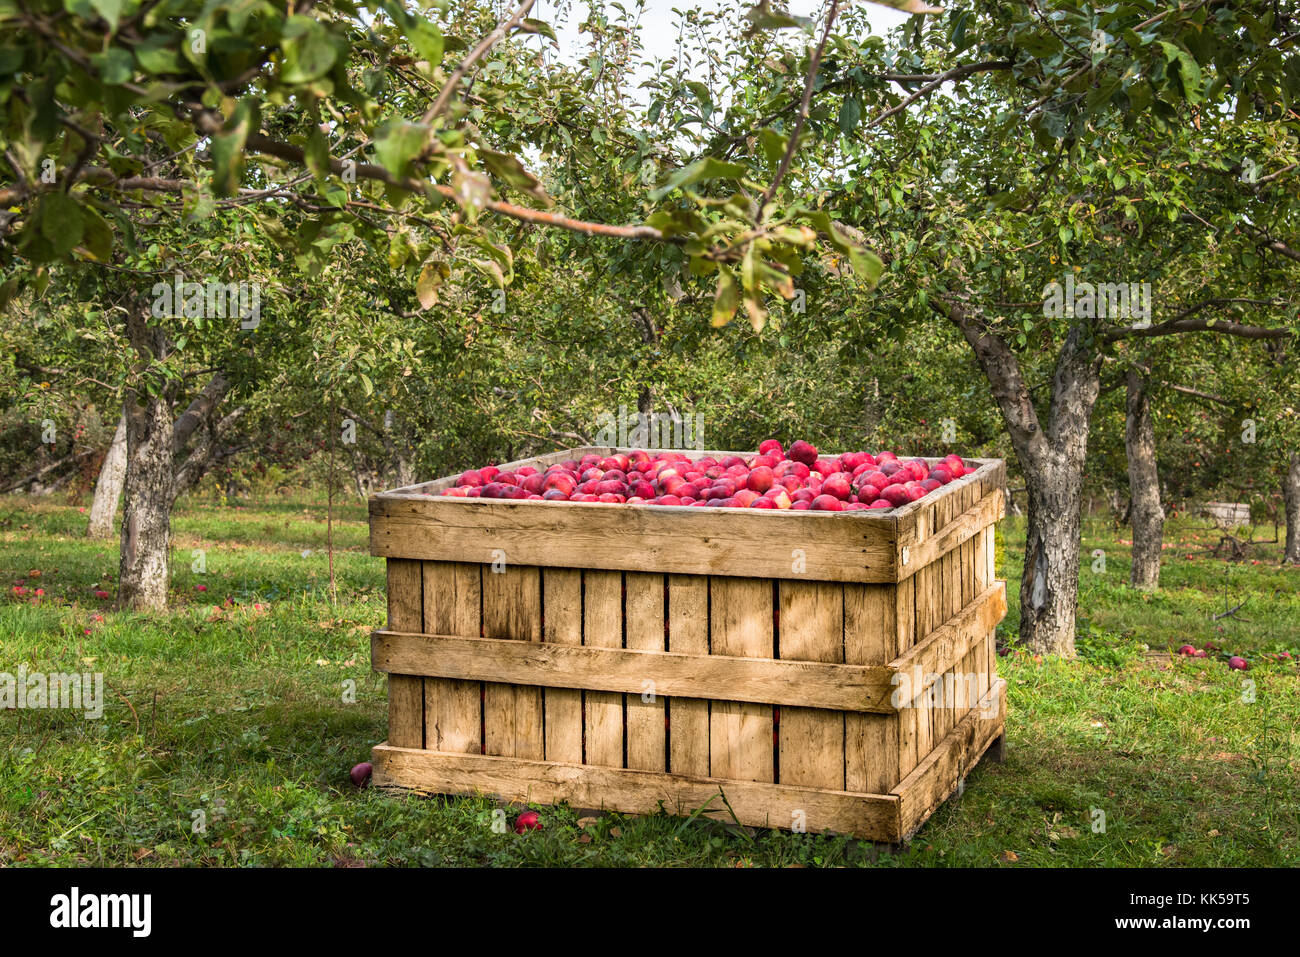 Apple farm, una scatola piena di mele. Foto Stock